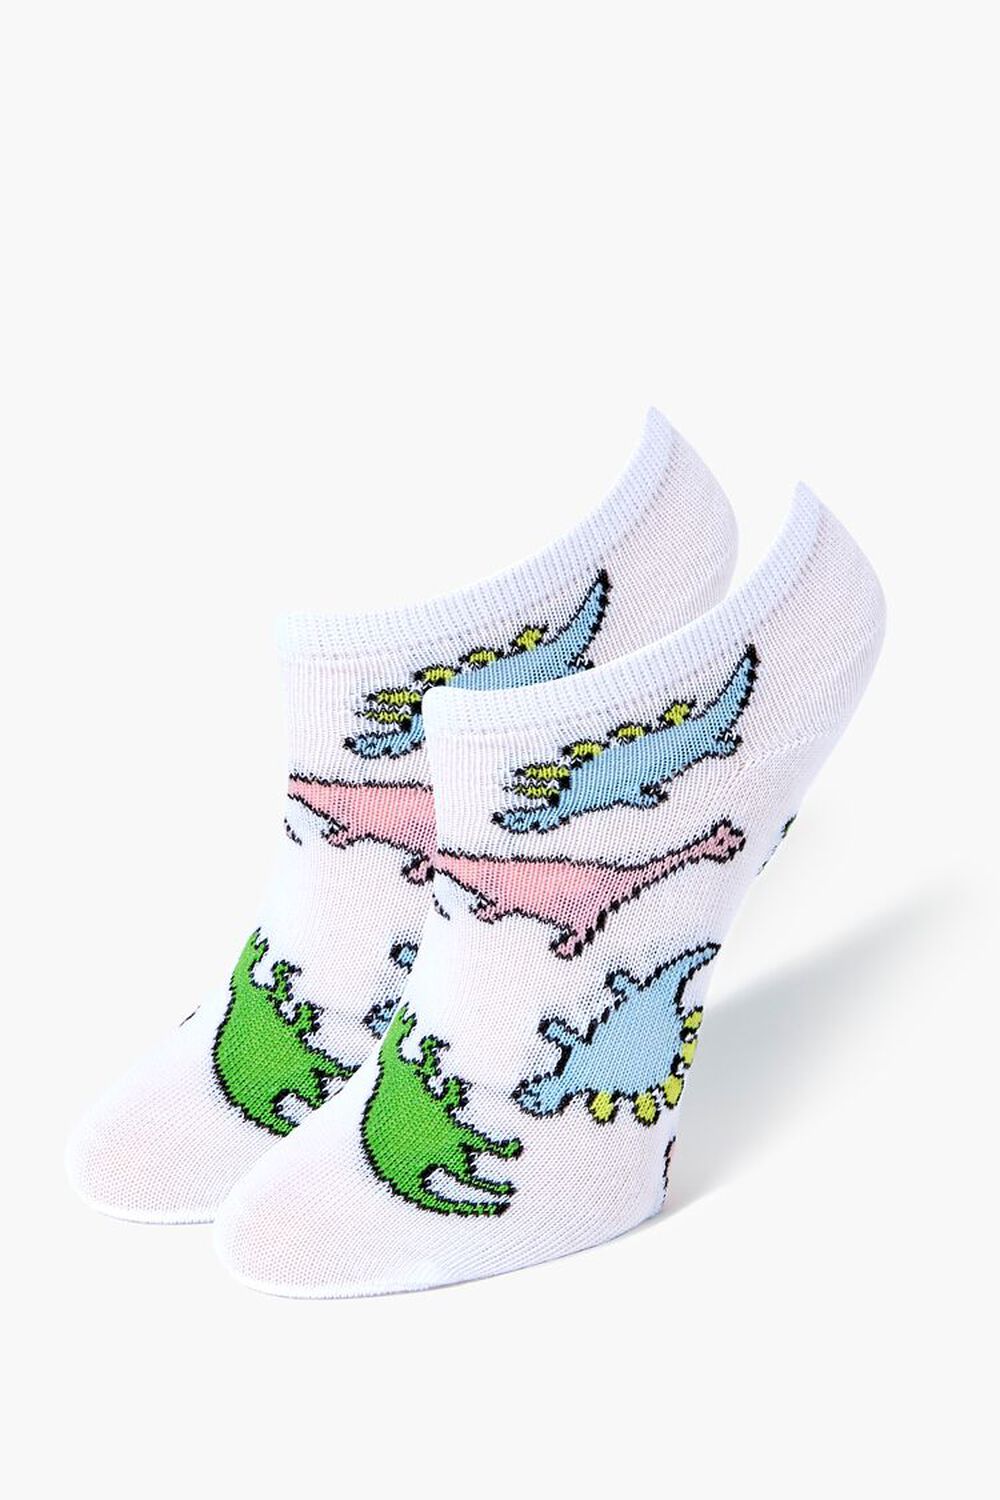 WHITE/MULTI Kids Dinosaur Print Ankle Socks (Girls + Boys), image 1